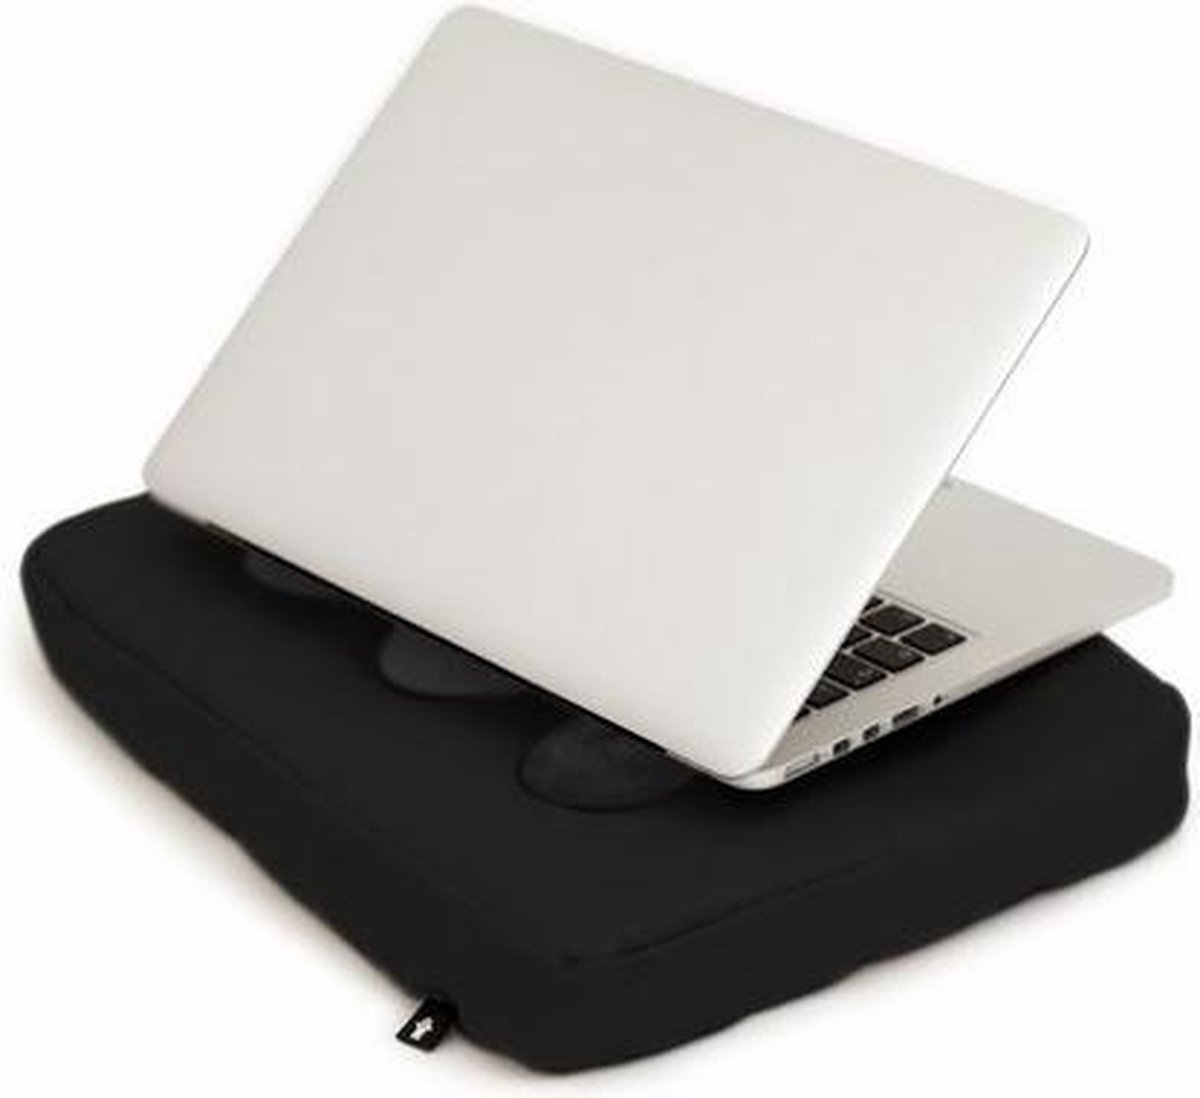 Bosign laptopkussen, laptop kussen, laptop schootkussen, laptop standaard, met siliconen doppen voor warme luchtafvoer - Zwart